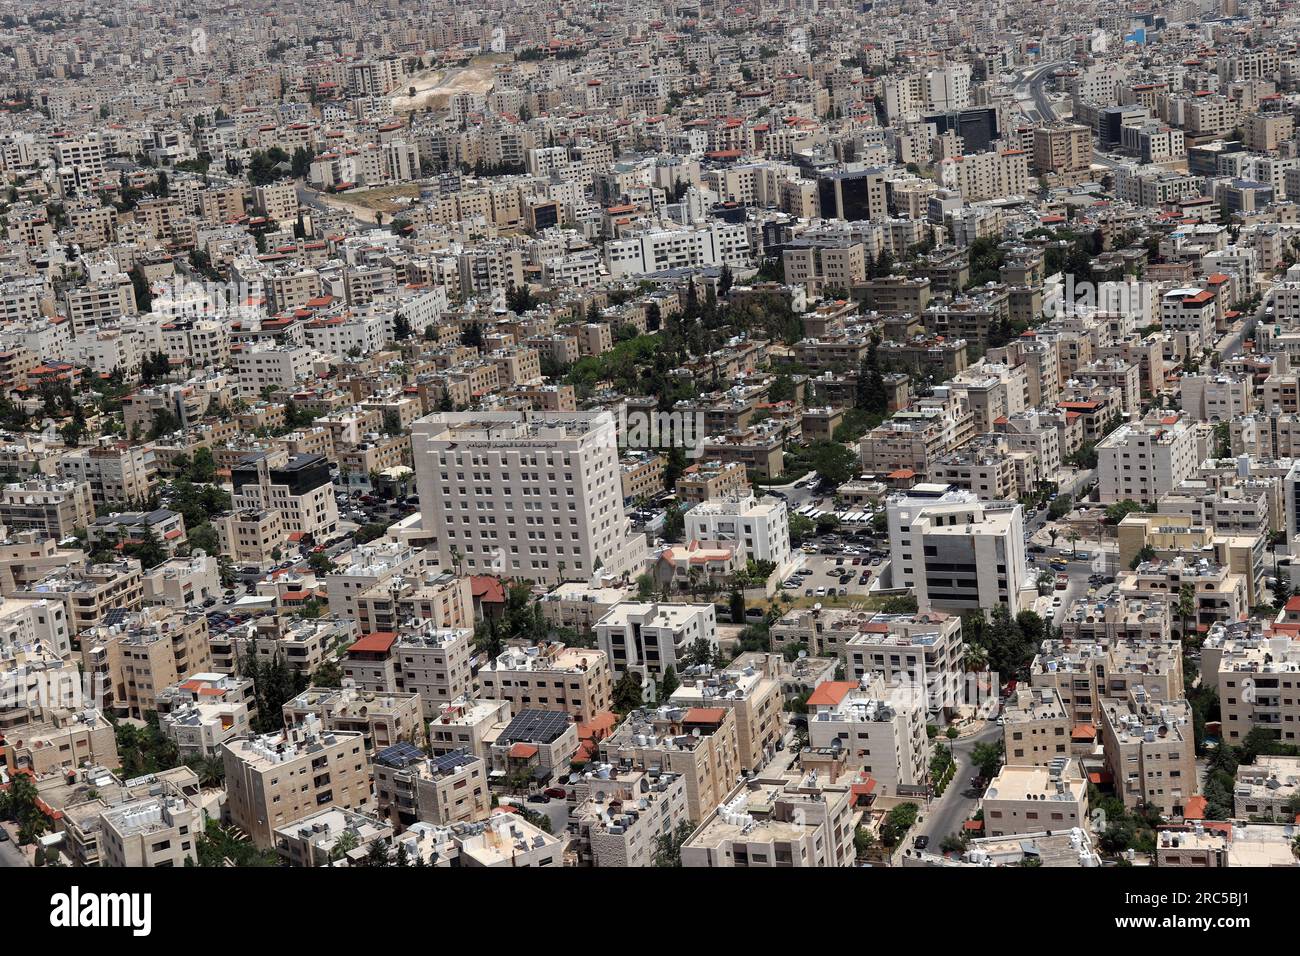 Une ville est densément peuplée (de nombreuses maisons et bâtiments) ville d'Amman. Jordanie, moyen-Orient de l'avion Banque D'Images